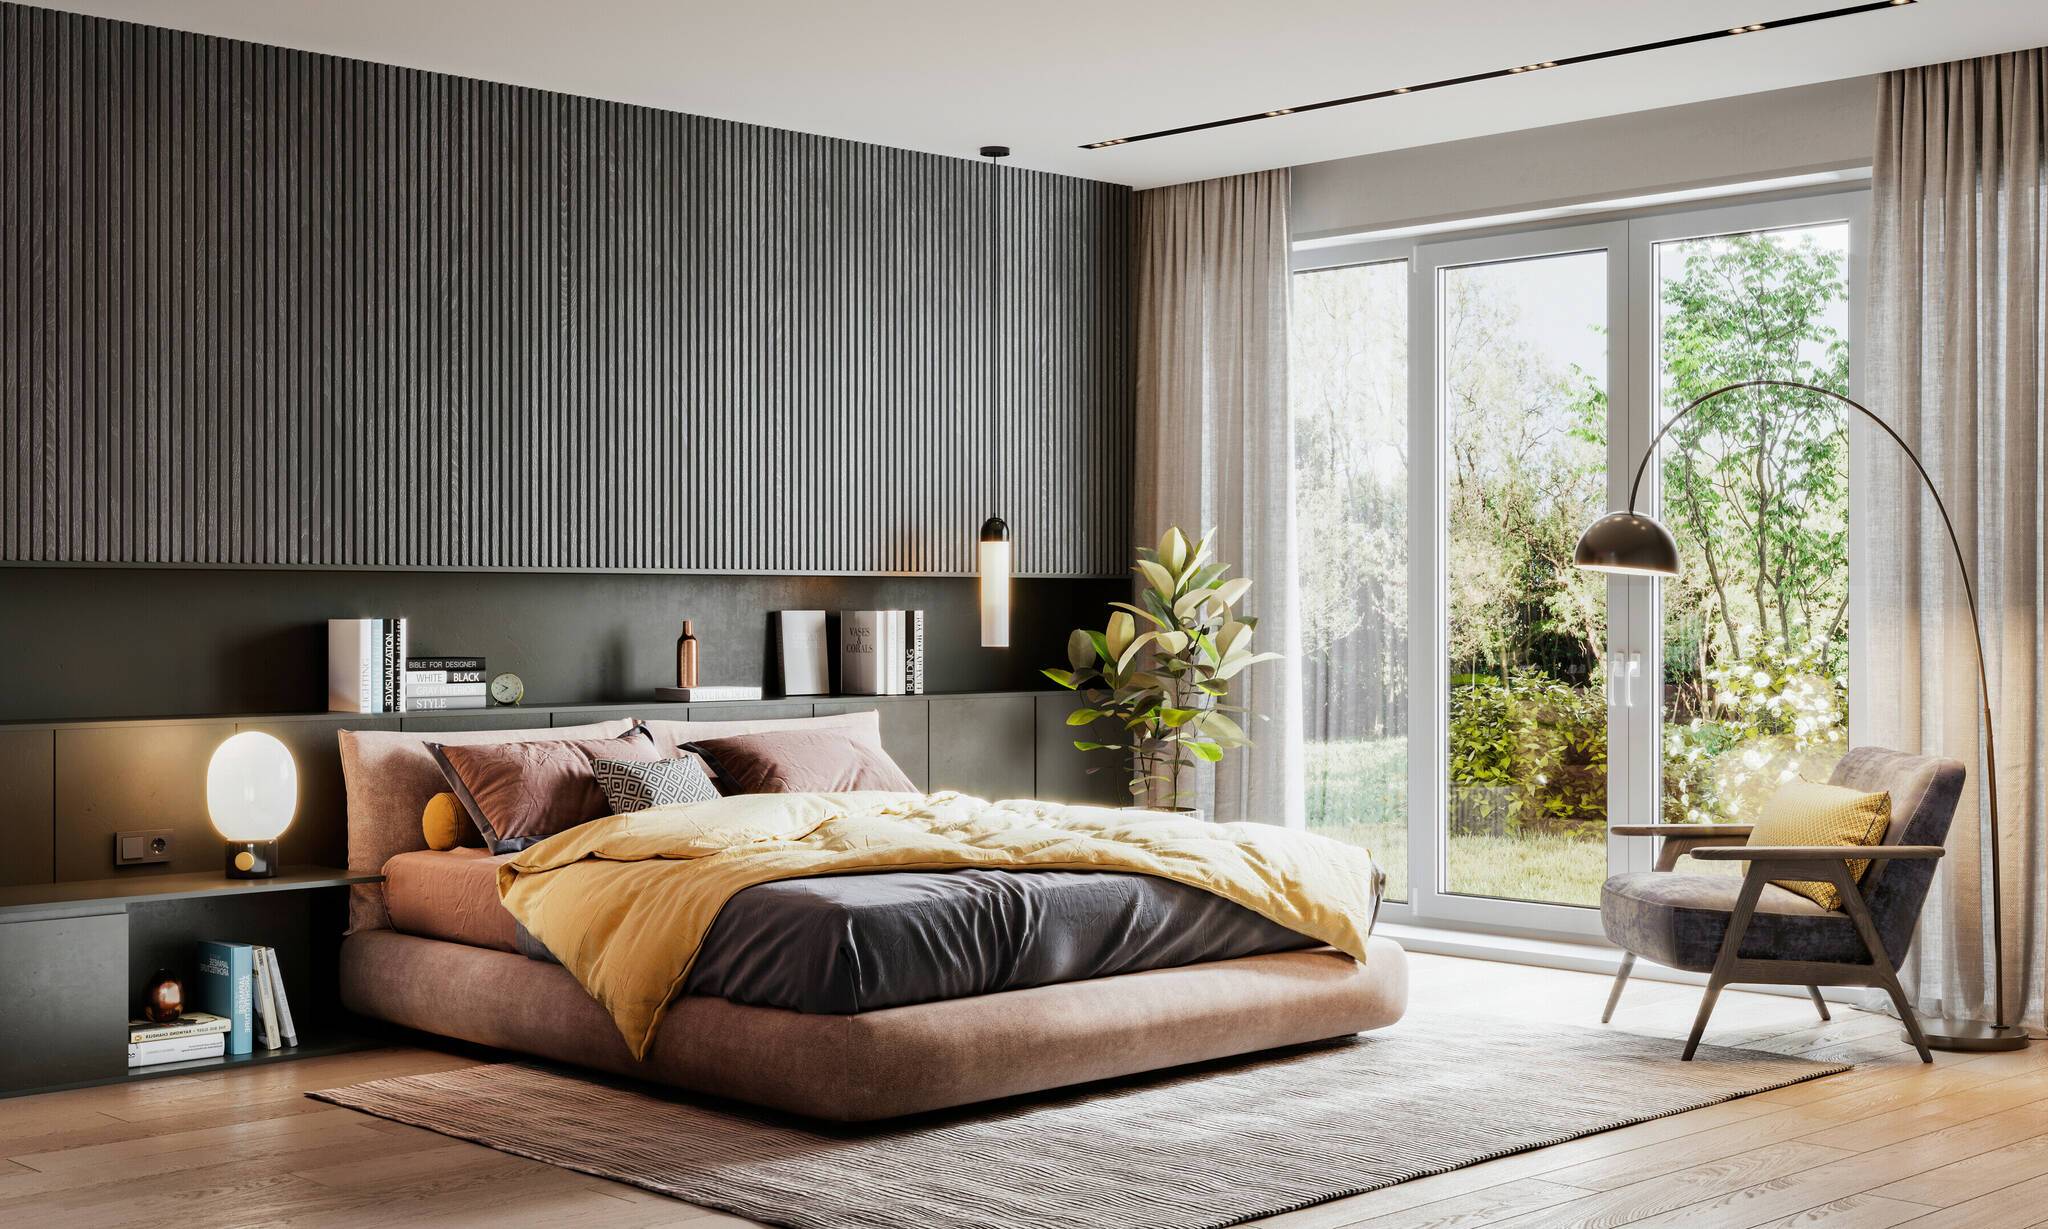  Möbel, die in Deutschland hergestellt werden, haben nicht nur ein modernes Design, sie genießen auch besonderes Vertrauen bei den Verbrauchern – schließlich soll das eigene Zuhause ein Wohlfühlort sein. 